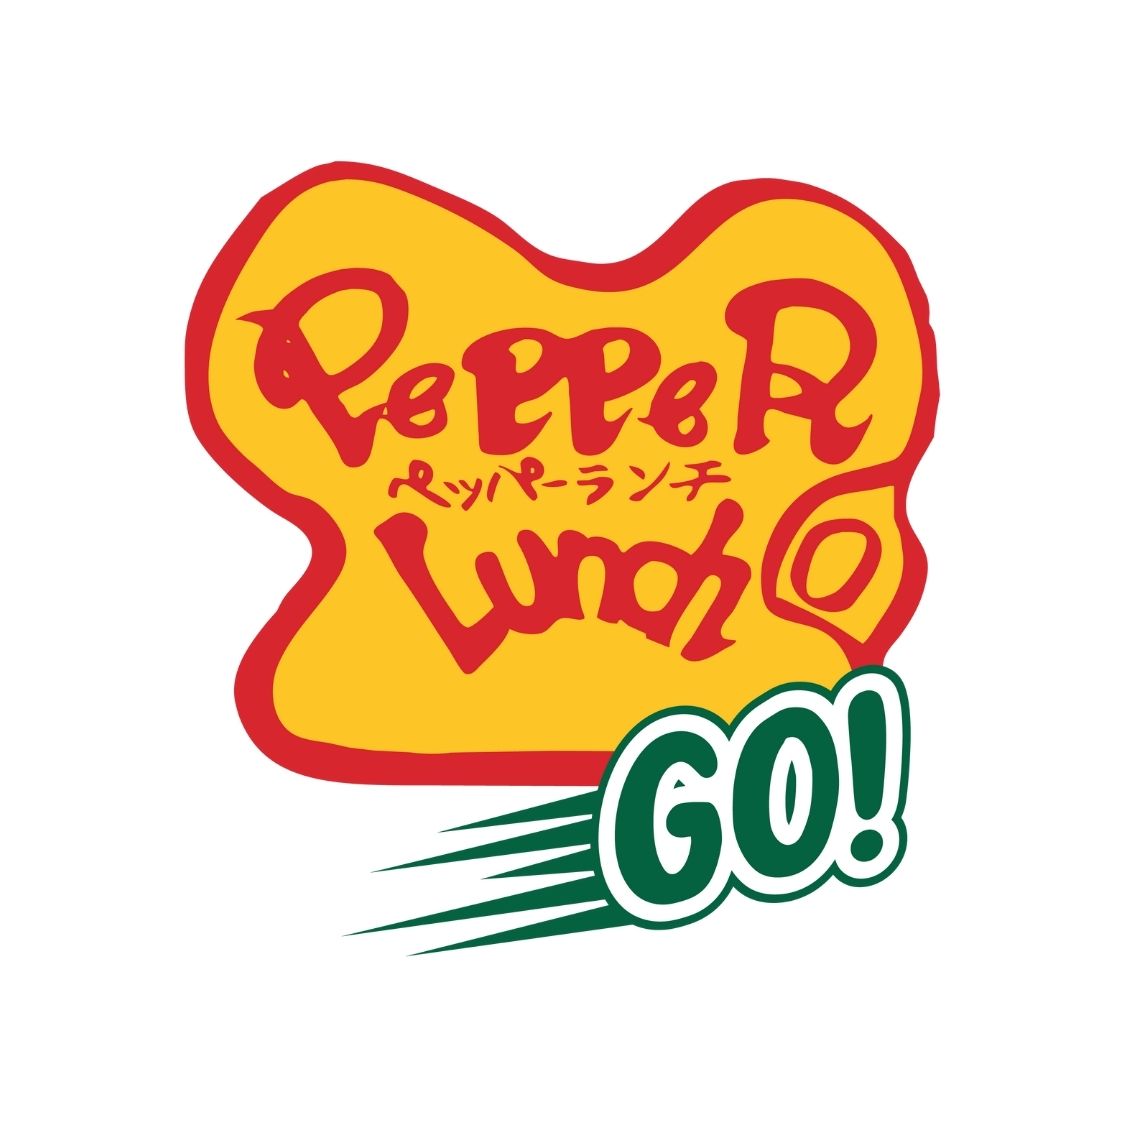 Pepper Lunch GO!  logo.jpg